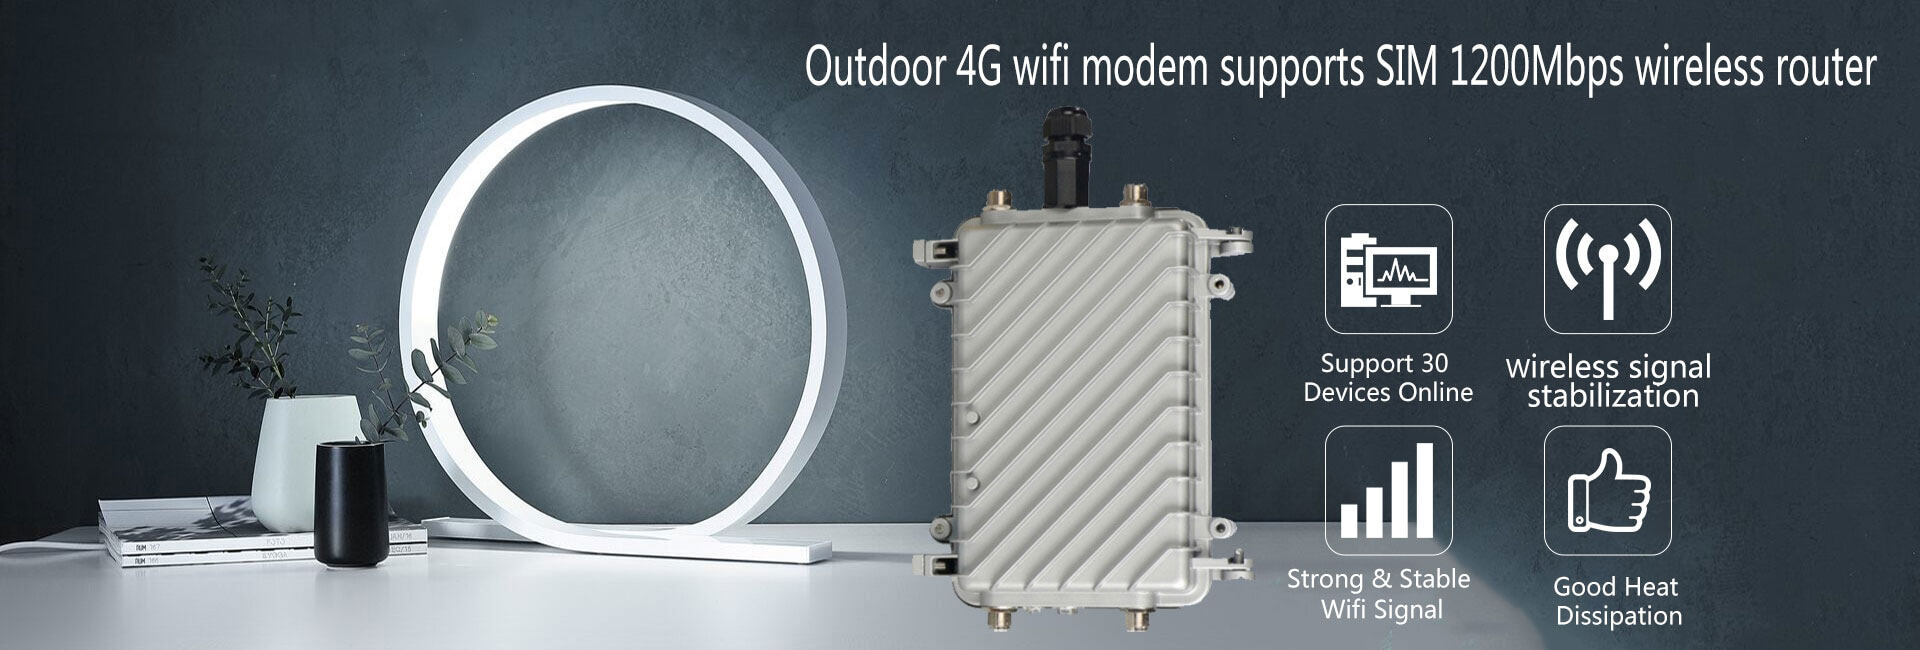 เกี่ยวกับสินค้า 4G/5G Router WiFi เราเตอร์ ใส่ซิม ราวเตอร์ใส่ซิม ใส่ซิมปล่อย Wi-Fi 300Mbps 4G LTE sim card Wireless router wifi 4g ทุกเครือข่าย รองรับการใช้งาน Wifi ได้พร้อมก 32 เราเตอร์ router ใส่ซิม เราเตอร์ใส่ซิม มีแบตในตัว